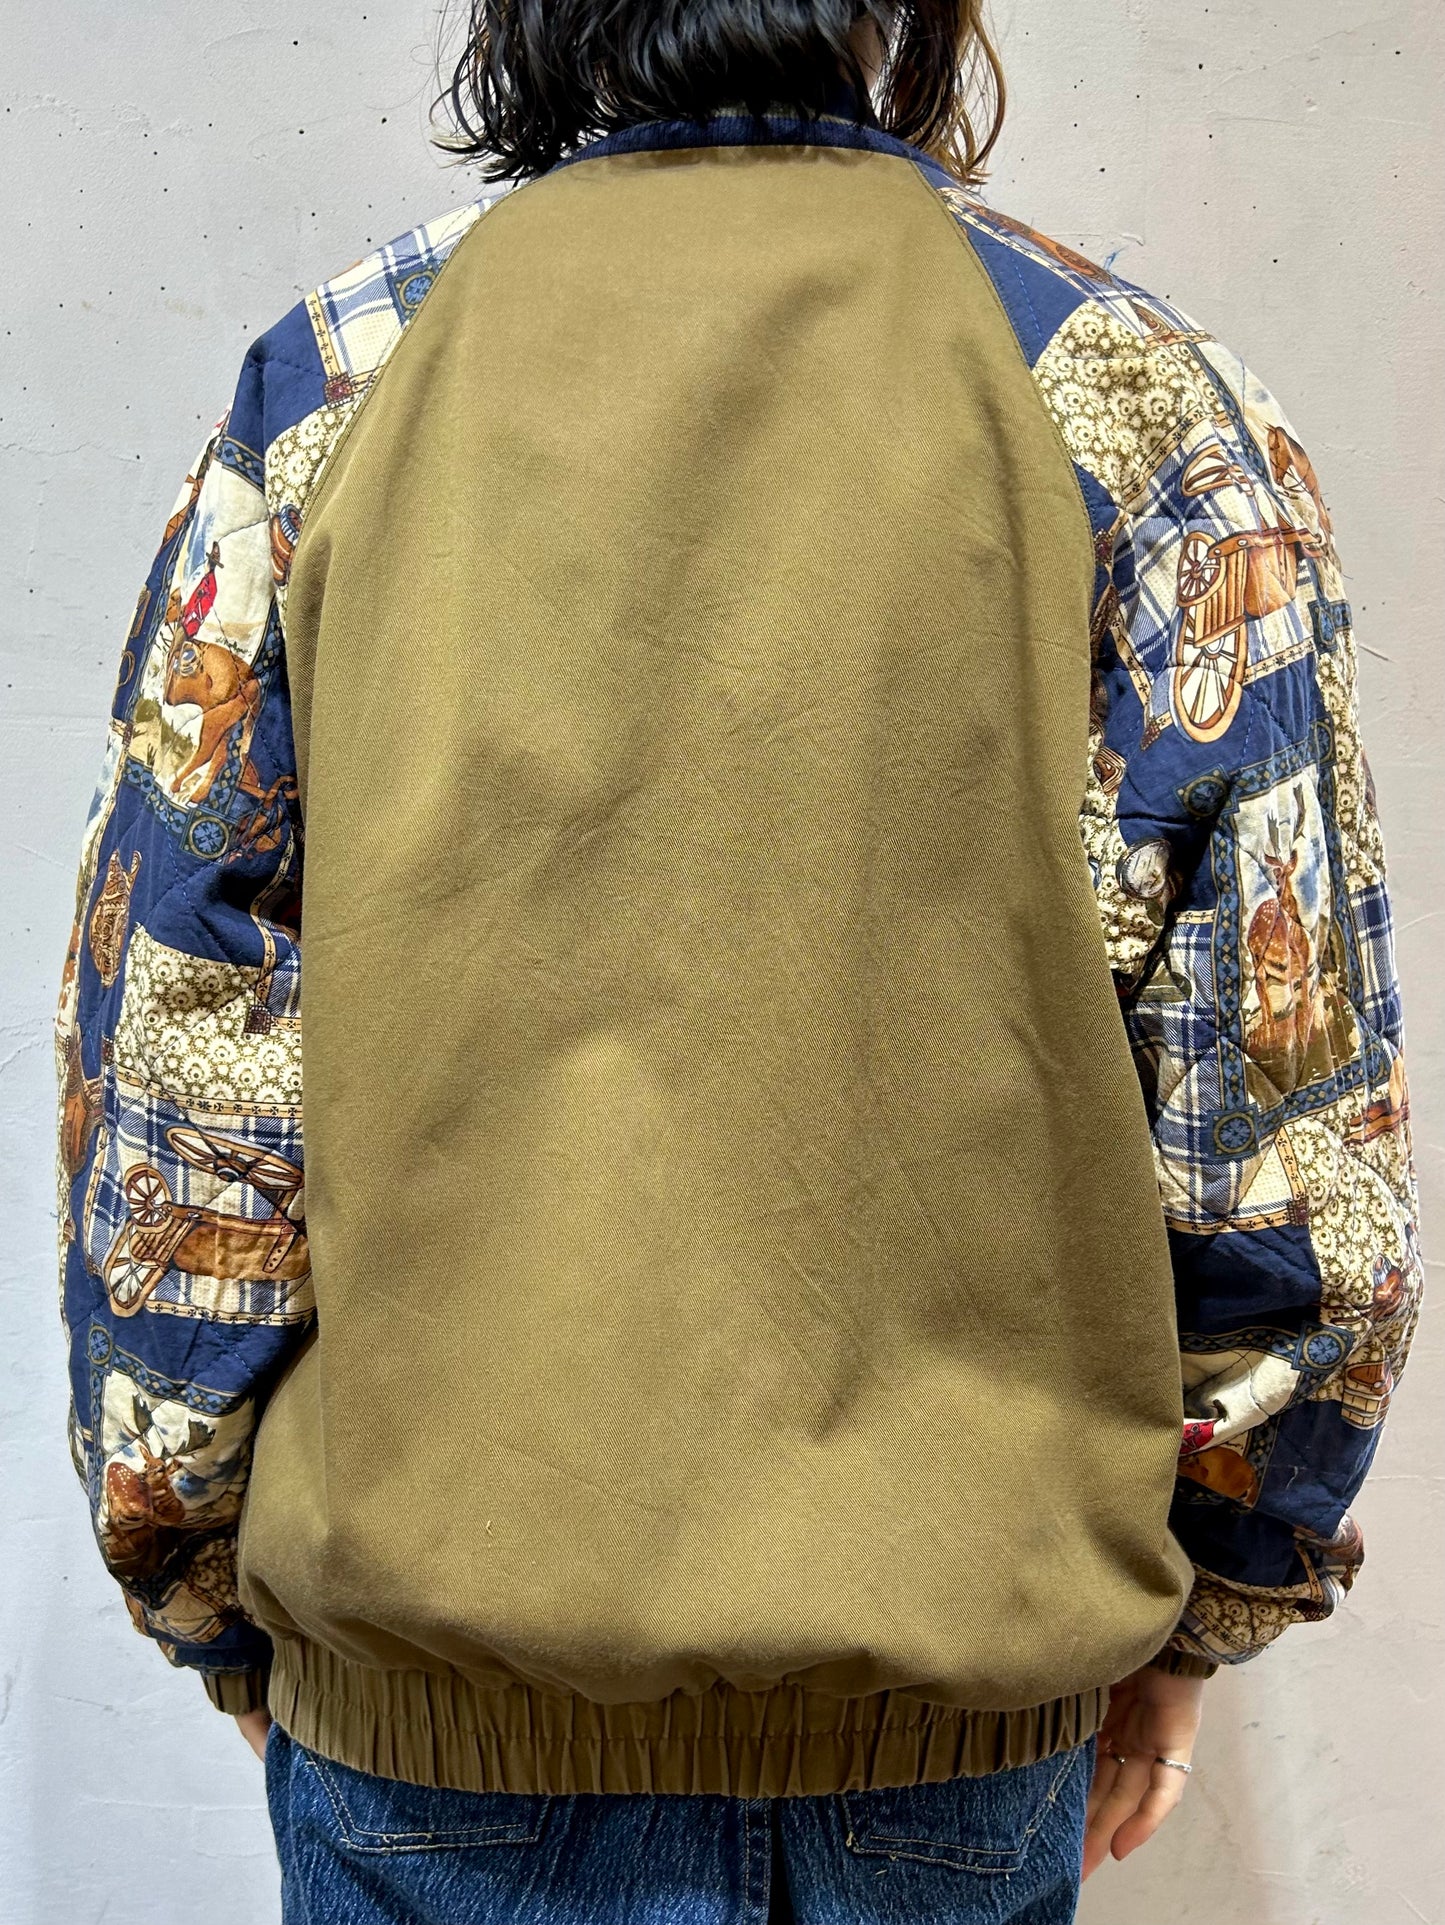 Vintage Patchwork Jacket MADE IN USA [L25788]